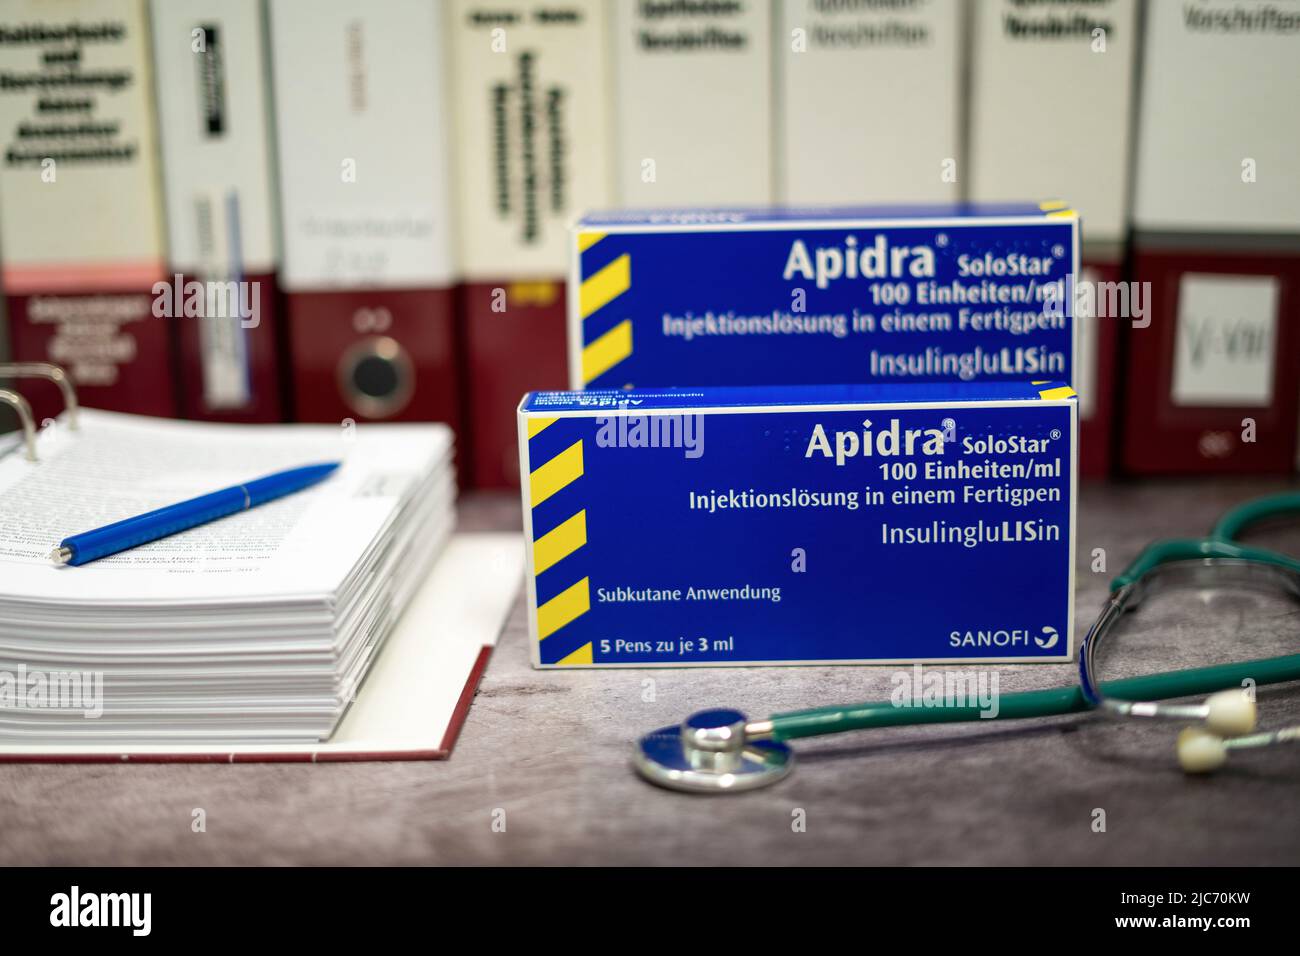 Apidra-Medikament, das schnell wirkendes Insulin zur Behandlung von Diabetes mellitus enthält, auf einem Tisch und im Hintergrund verschiedene medizinische Bücher. Stockfoto